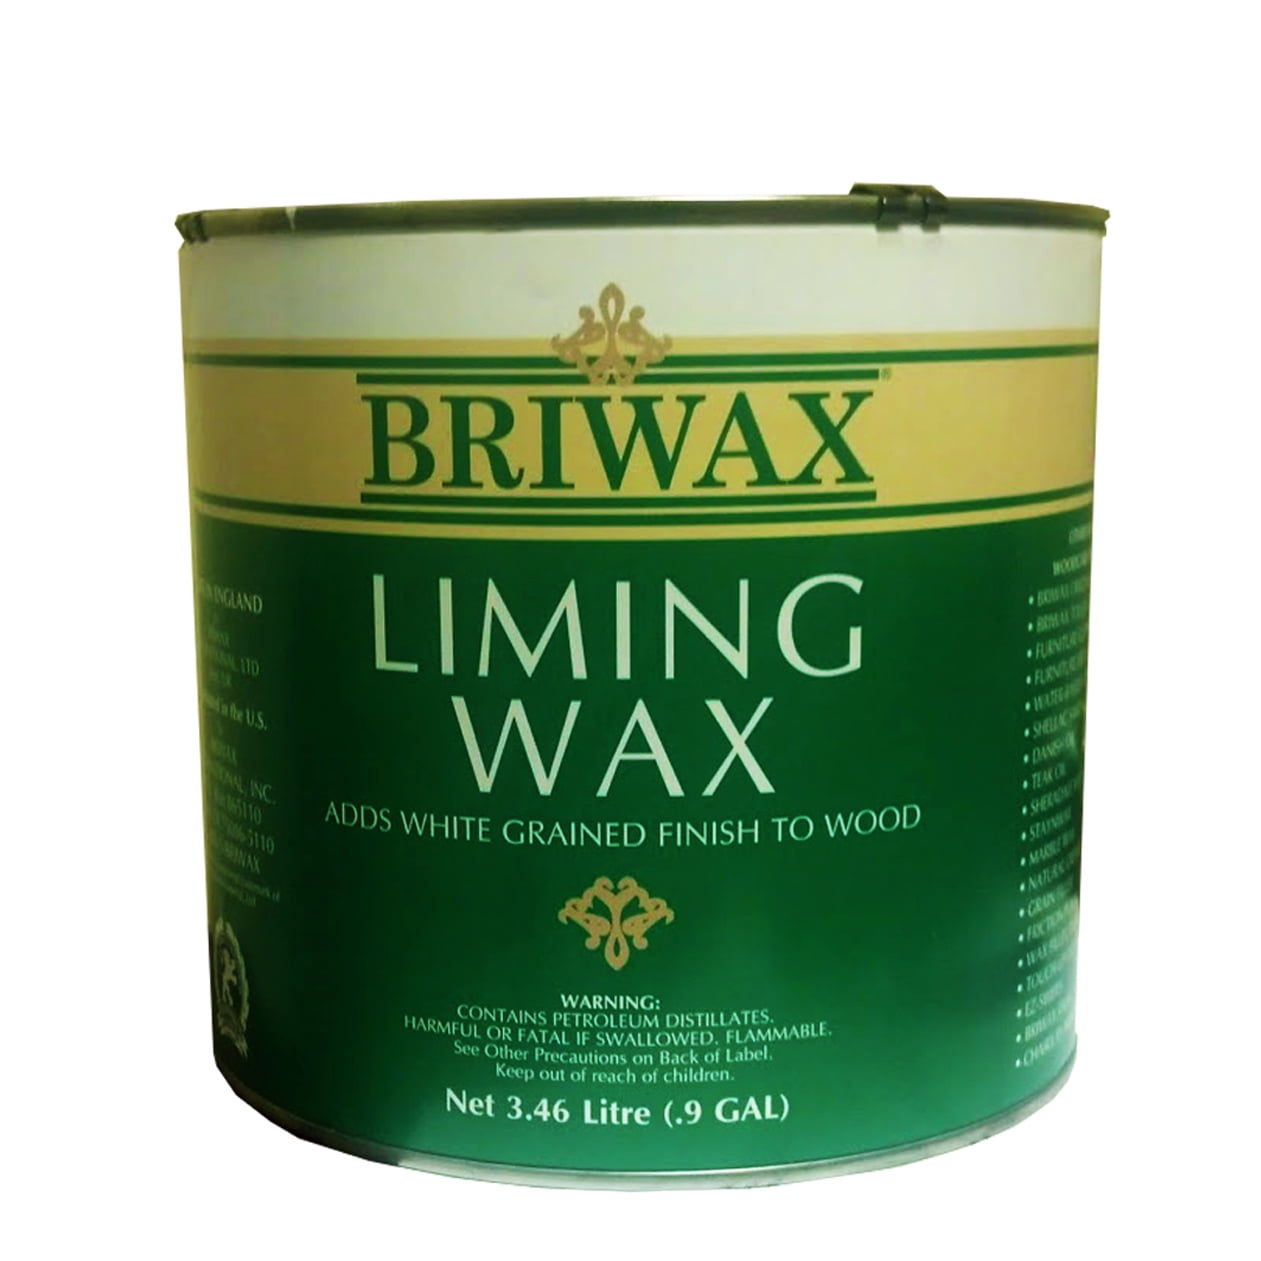 Minwax Finishing Wax Colors